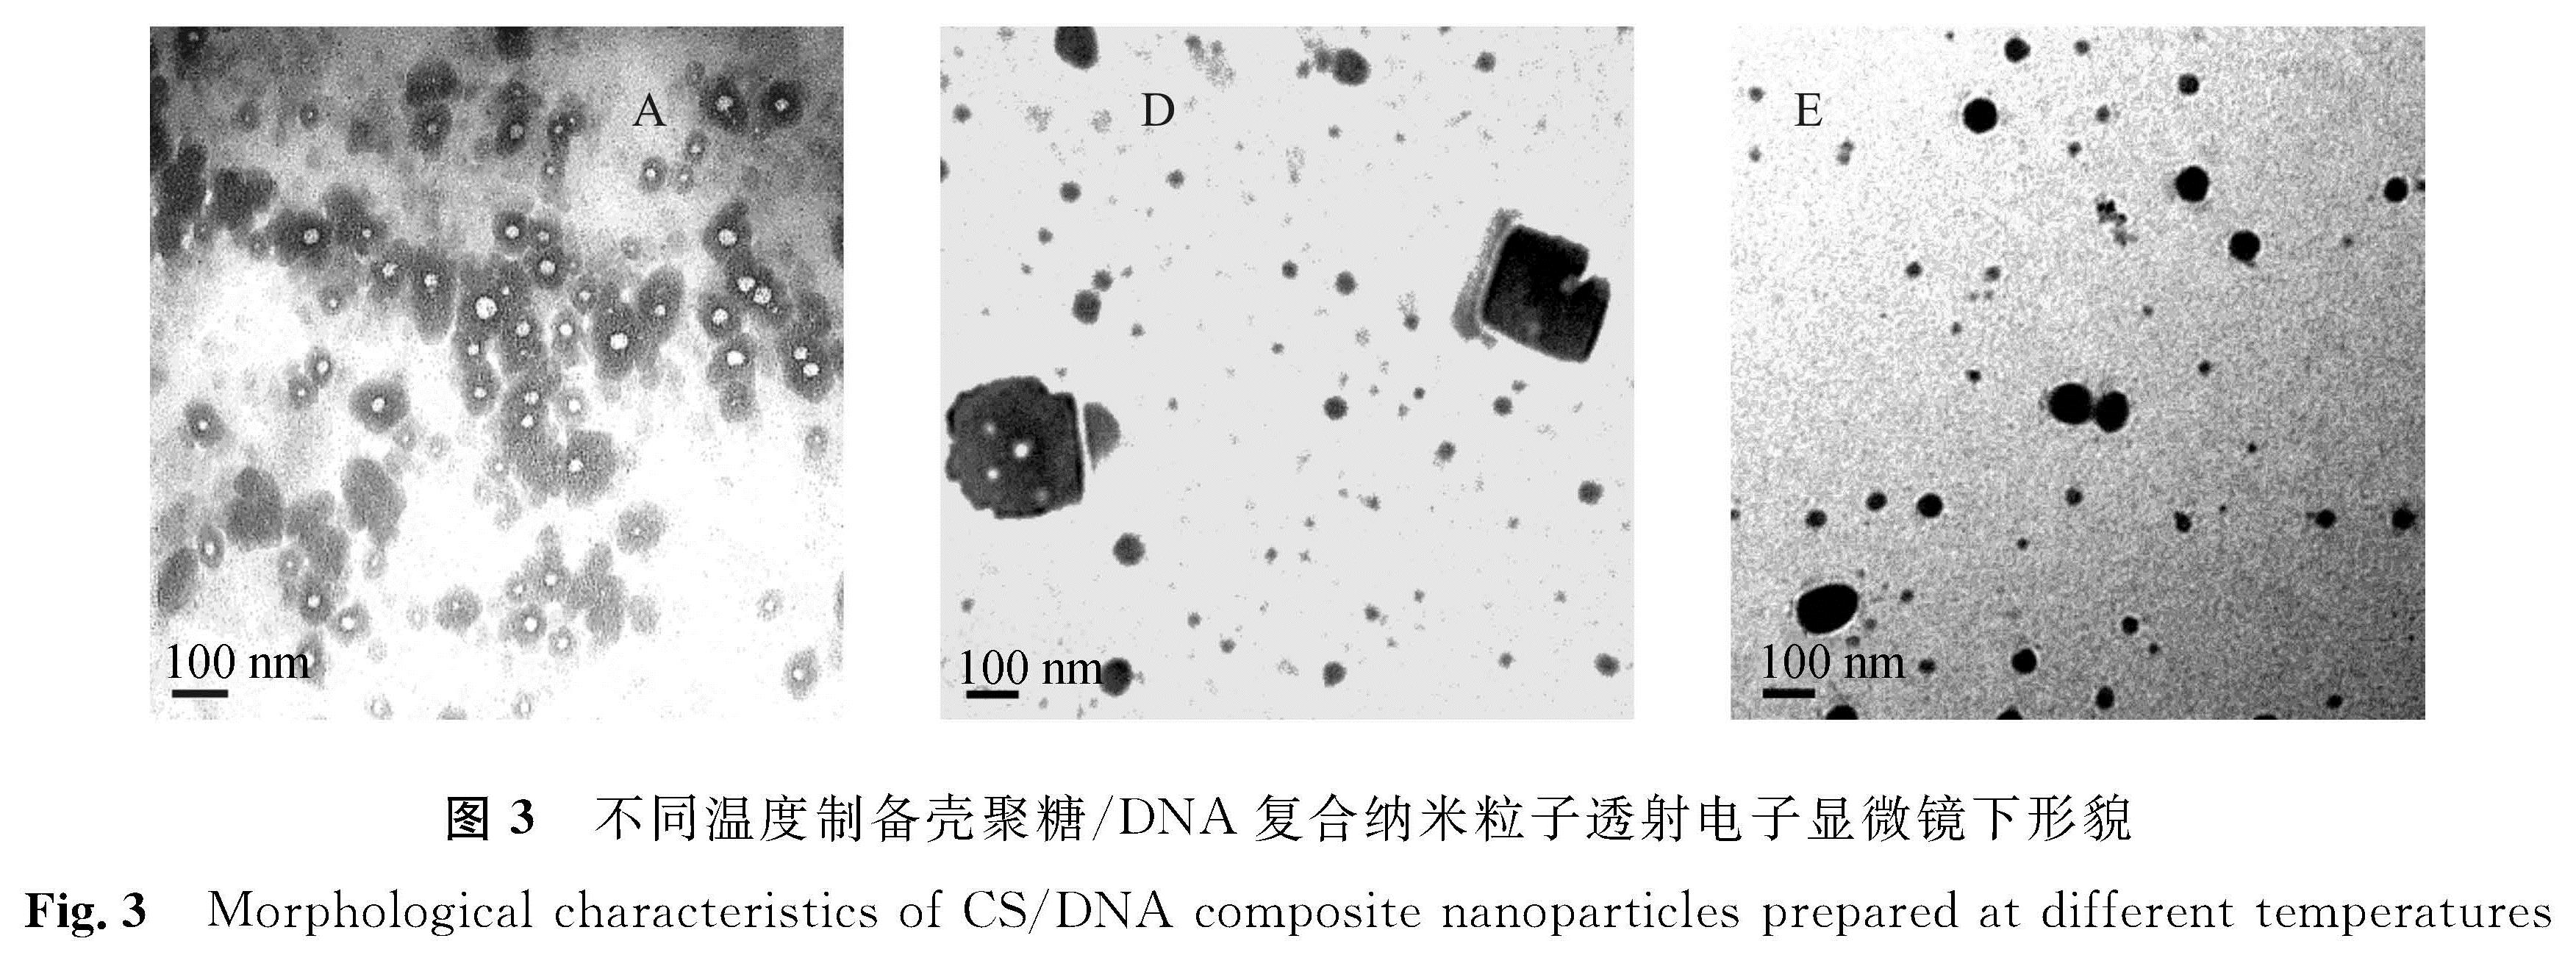 图3 不同温度制备壳聚糖/DNA复合纳米粒子透射电子显微镜下形貌<br/>Fig.3 Morphological characteristics of CS/DNA composite nanoparticles prepared at different temperatures